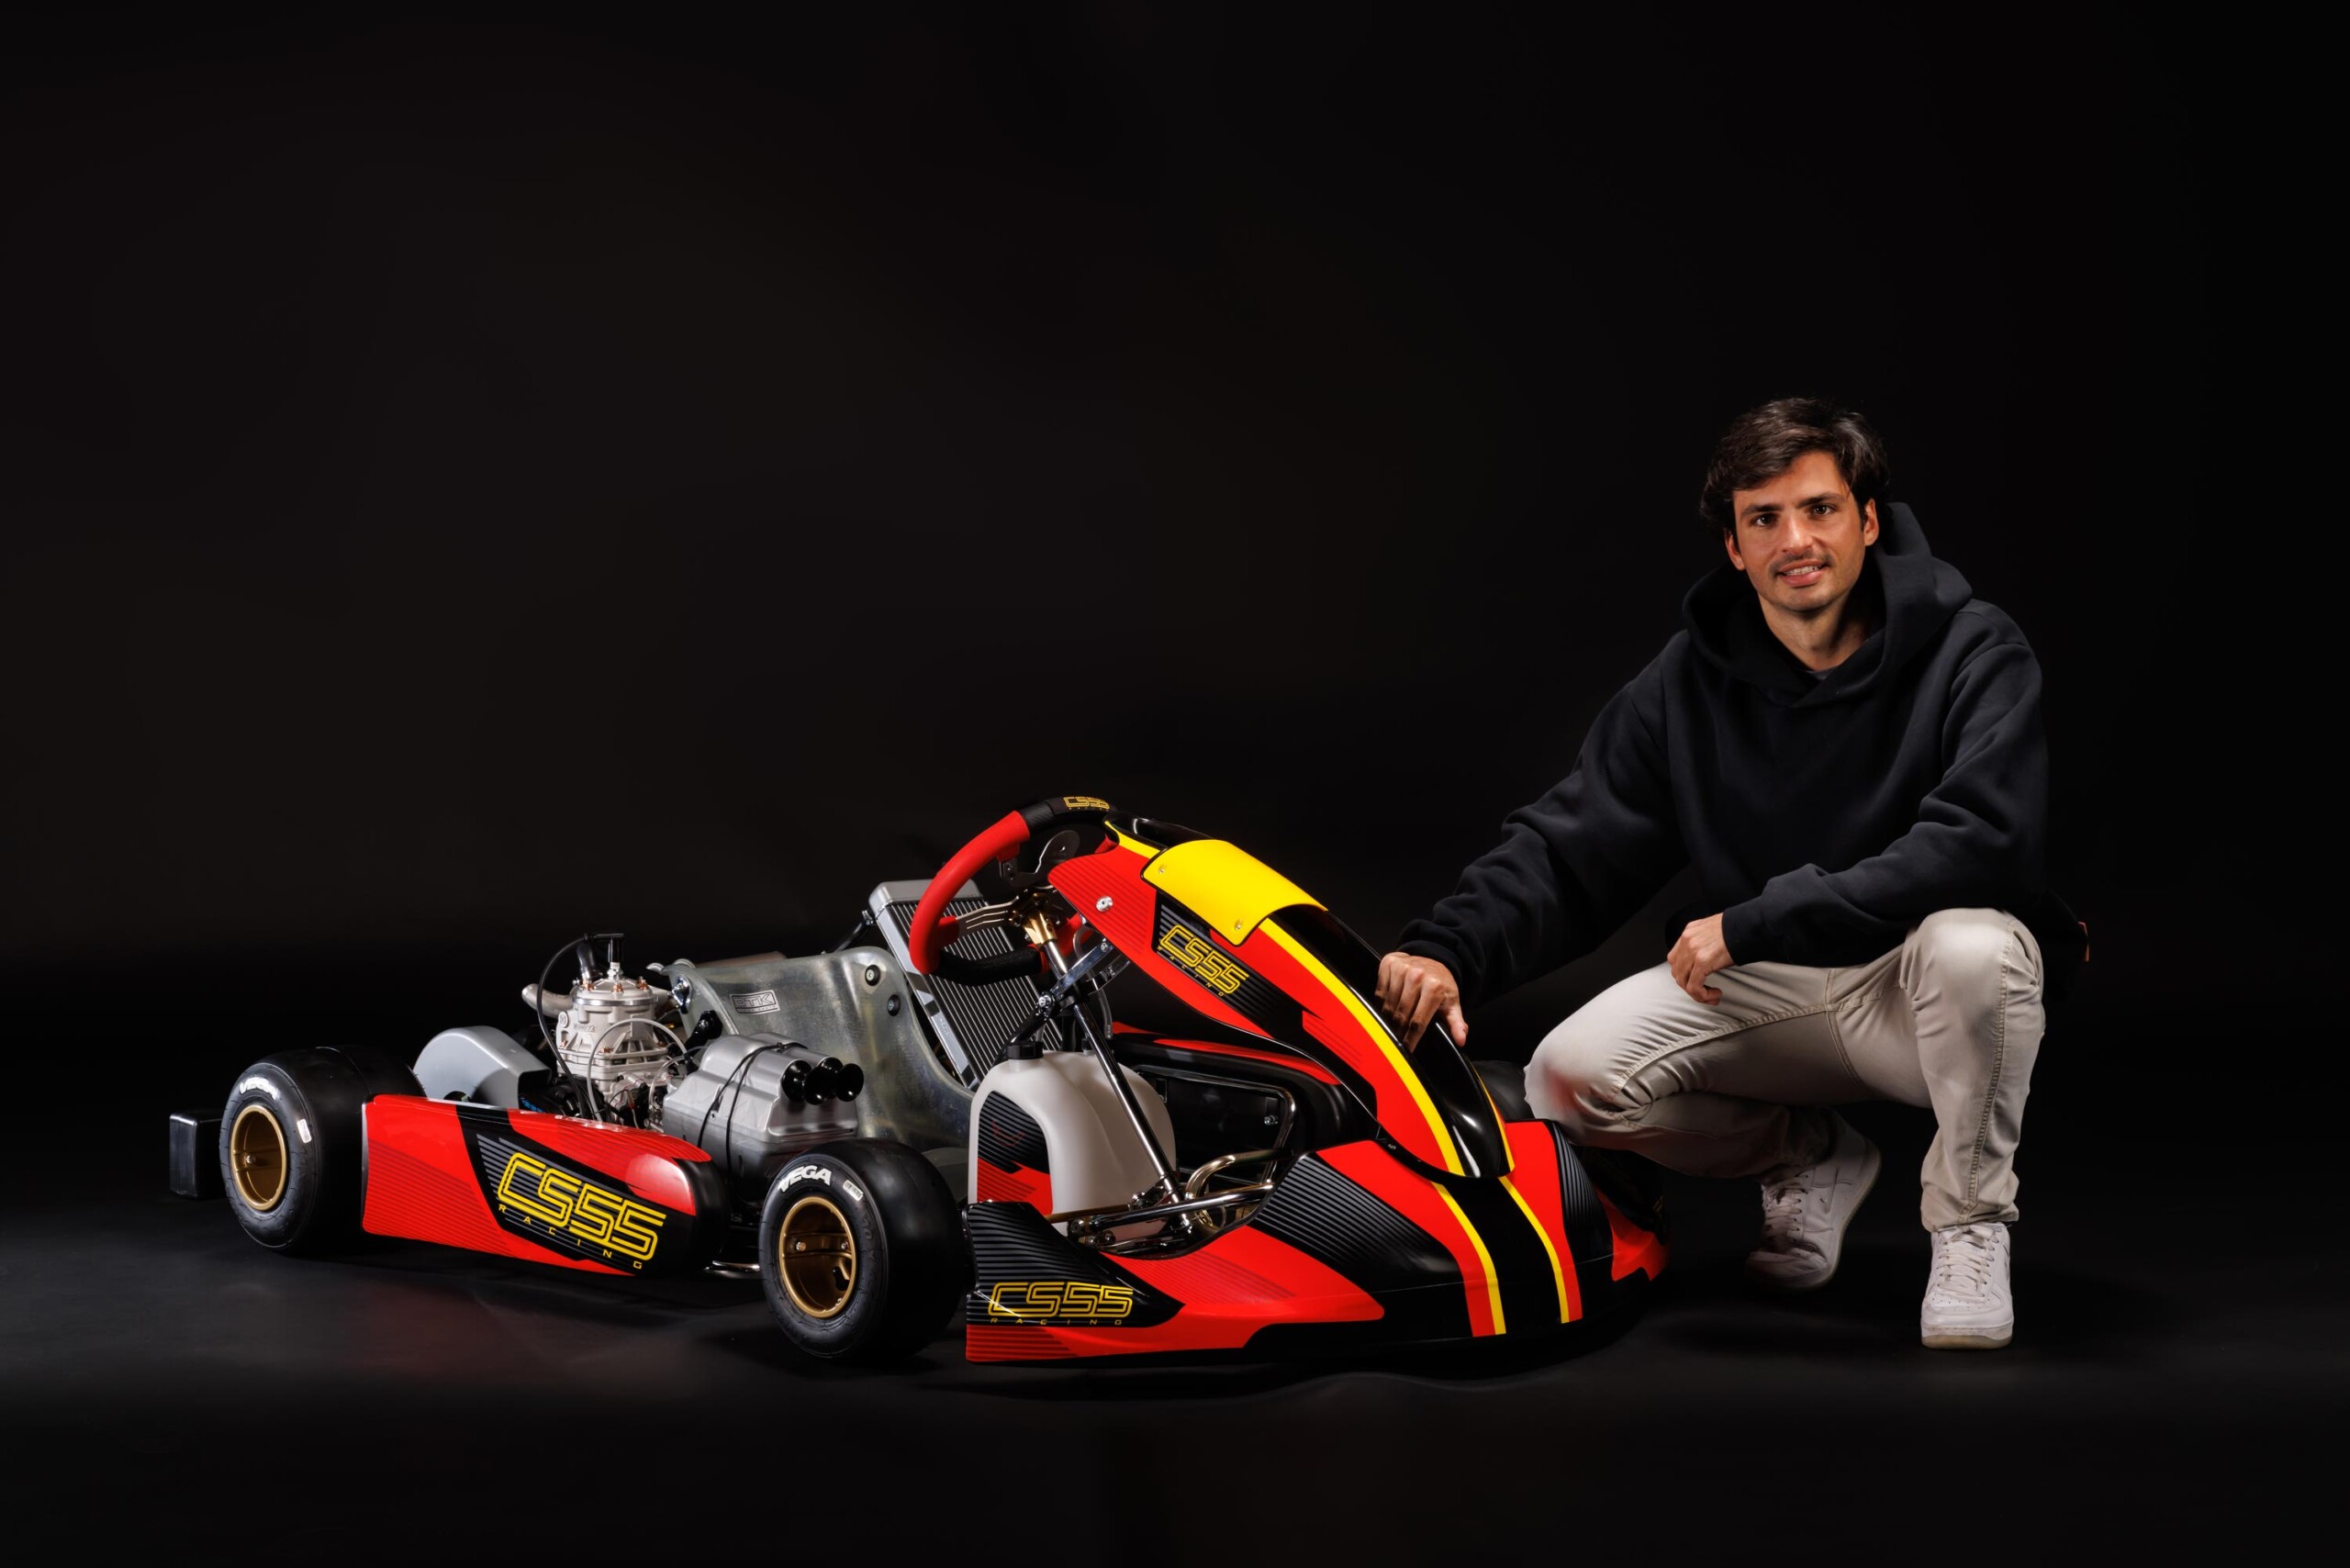 Nace la CS55 Racing Kart: Carlos Sainz y OTK Kart Group presentan su nueva joya en el mundo del karting